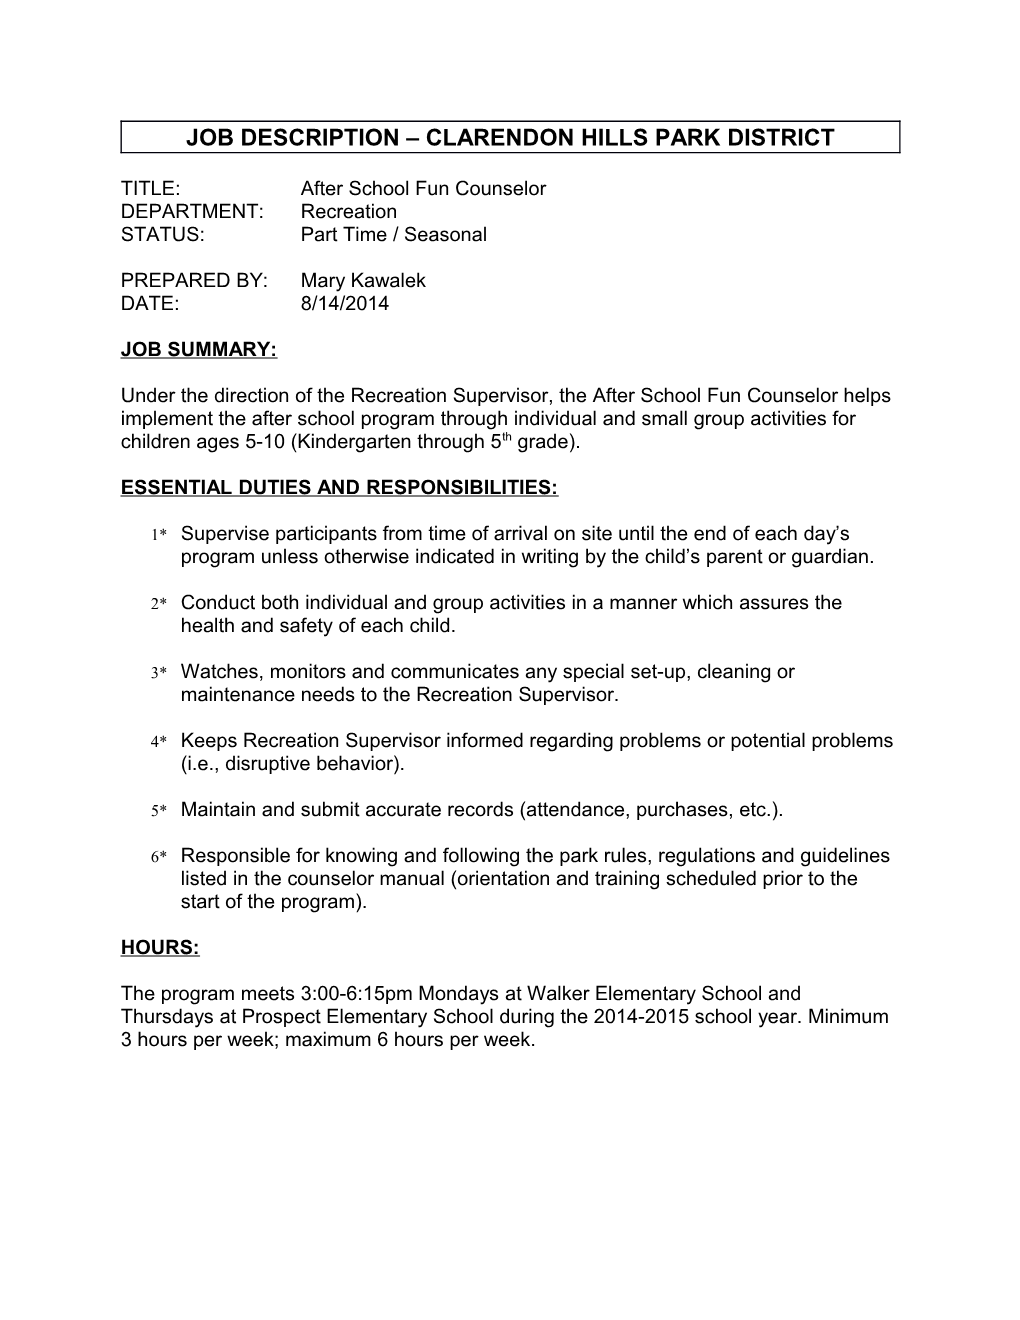 Job Description Clarendon Hills Park District